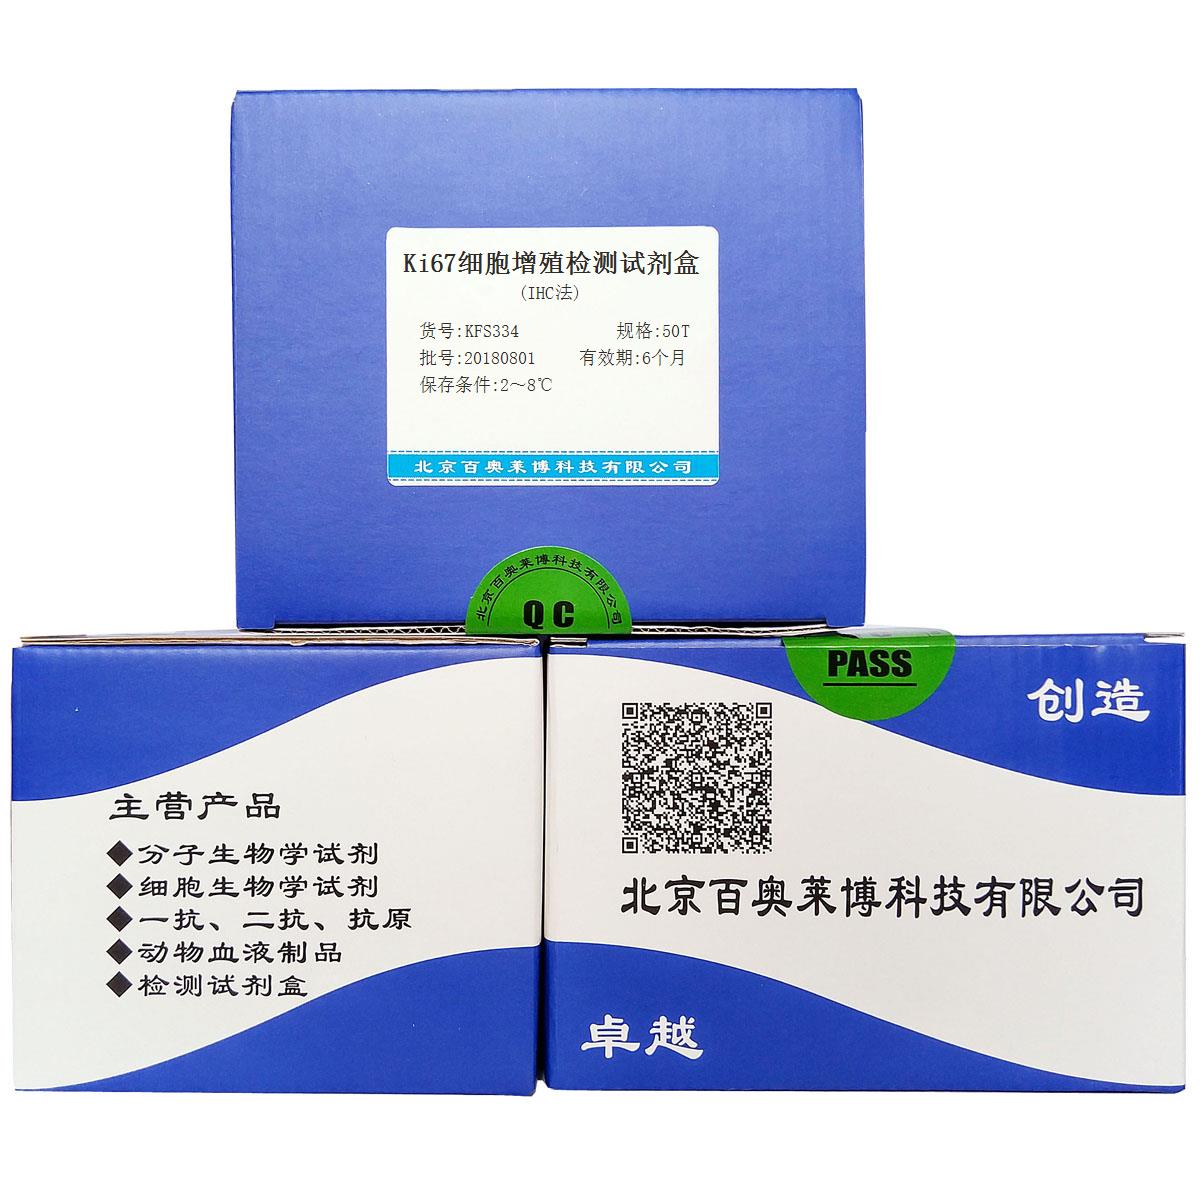 Ki67细胞增殖检测试剂盒(IHC法)